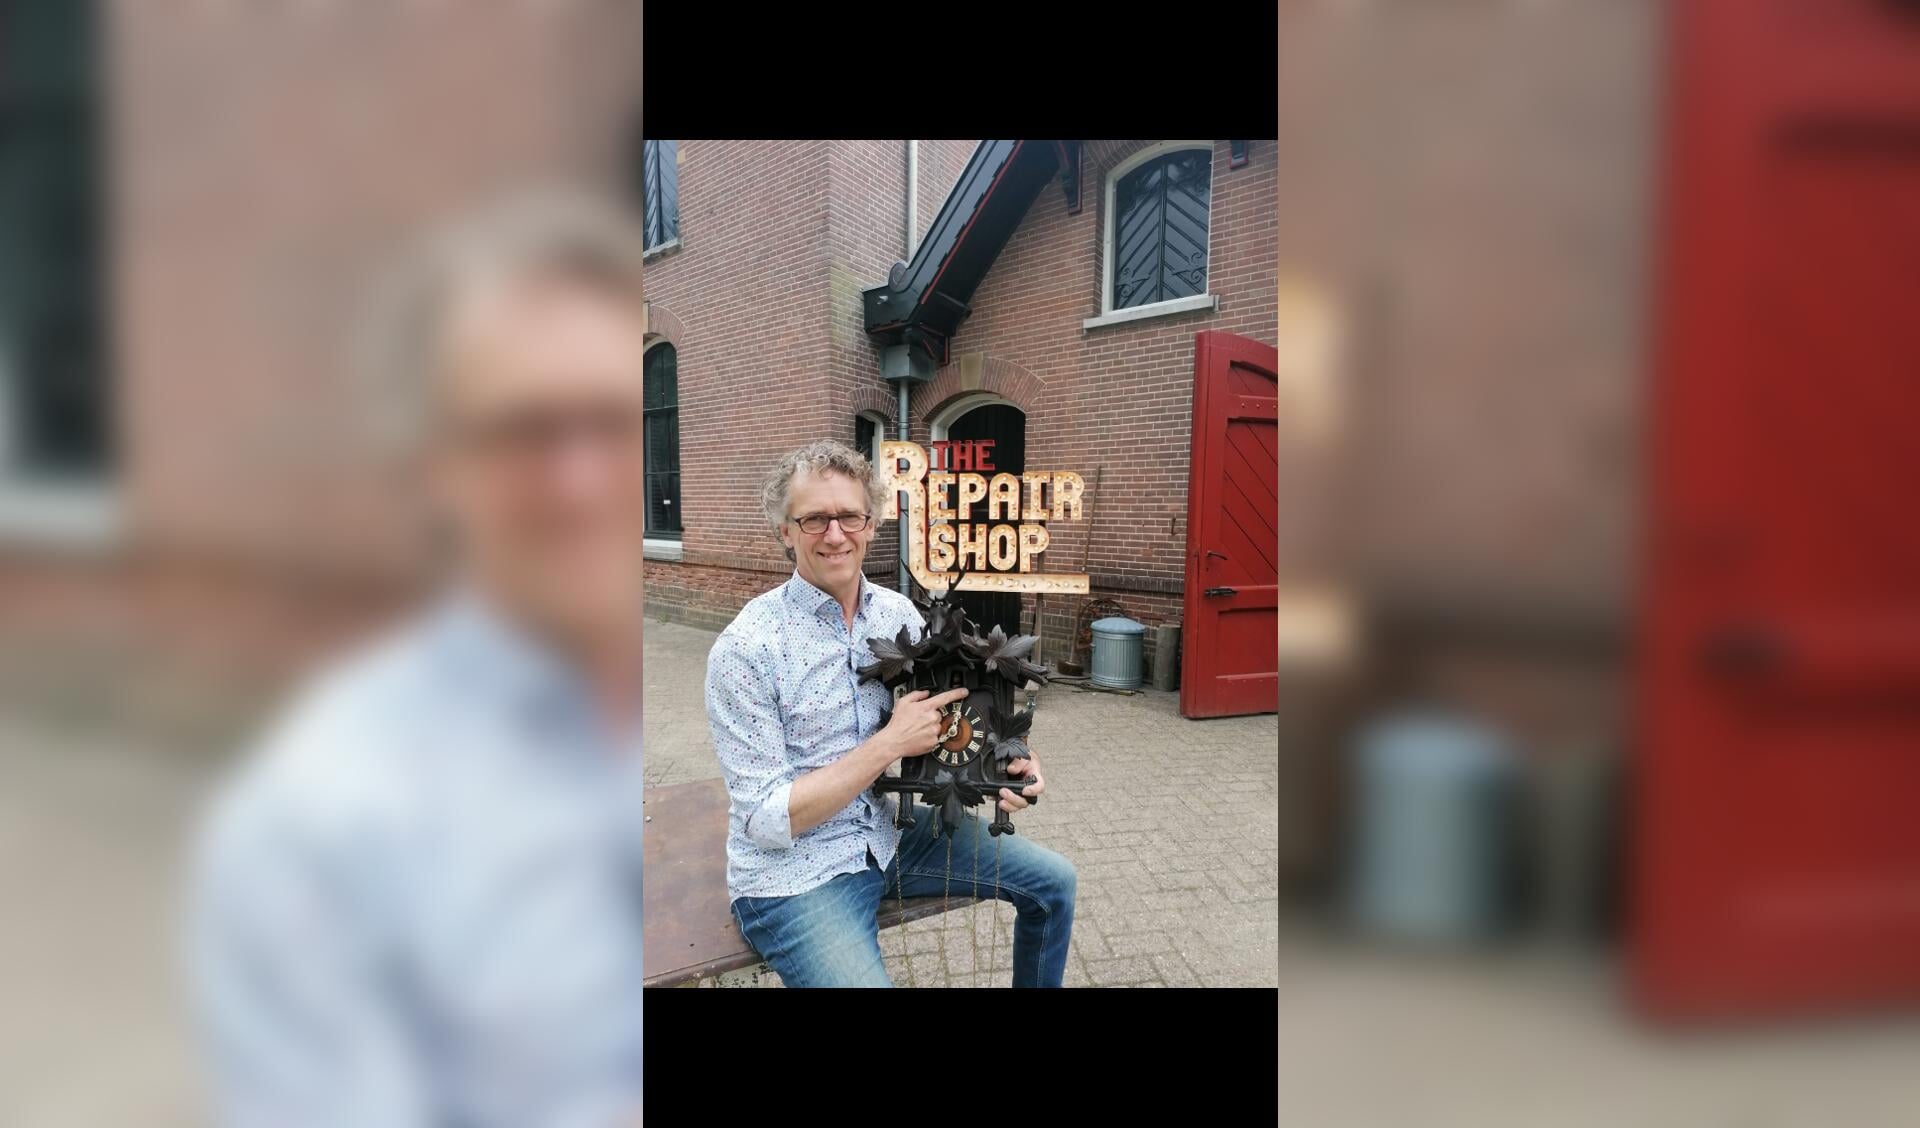 Horlogemaker Tjan van Loenen is maandag te zien bij 'The Repair Shop' op RTL4